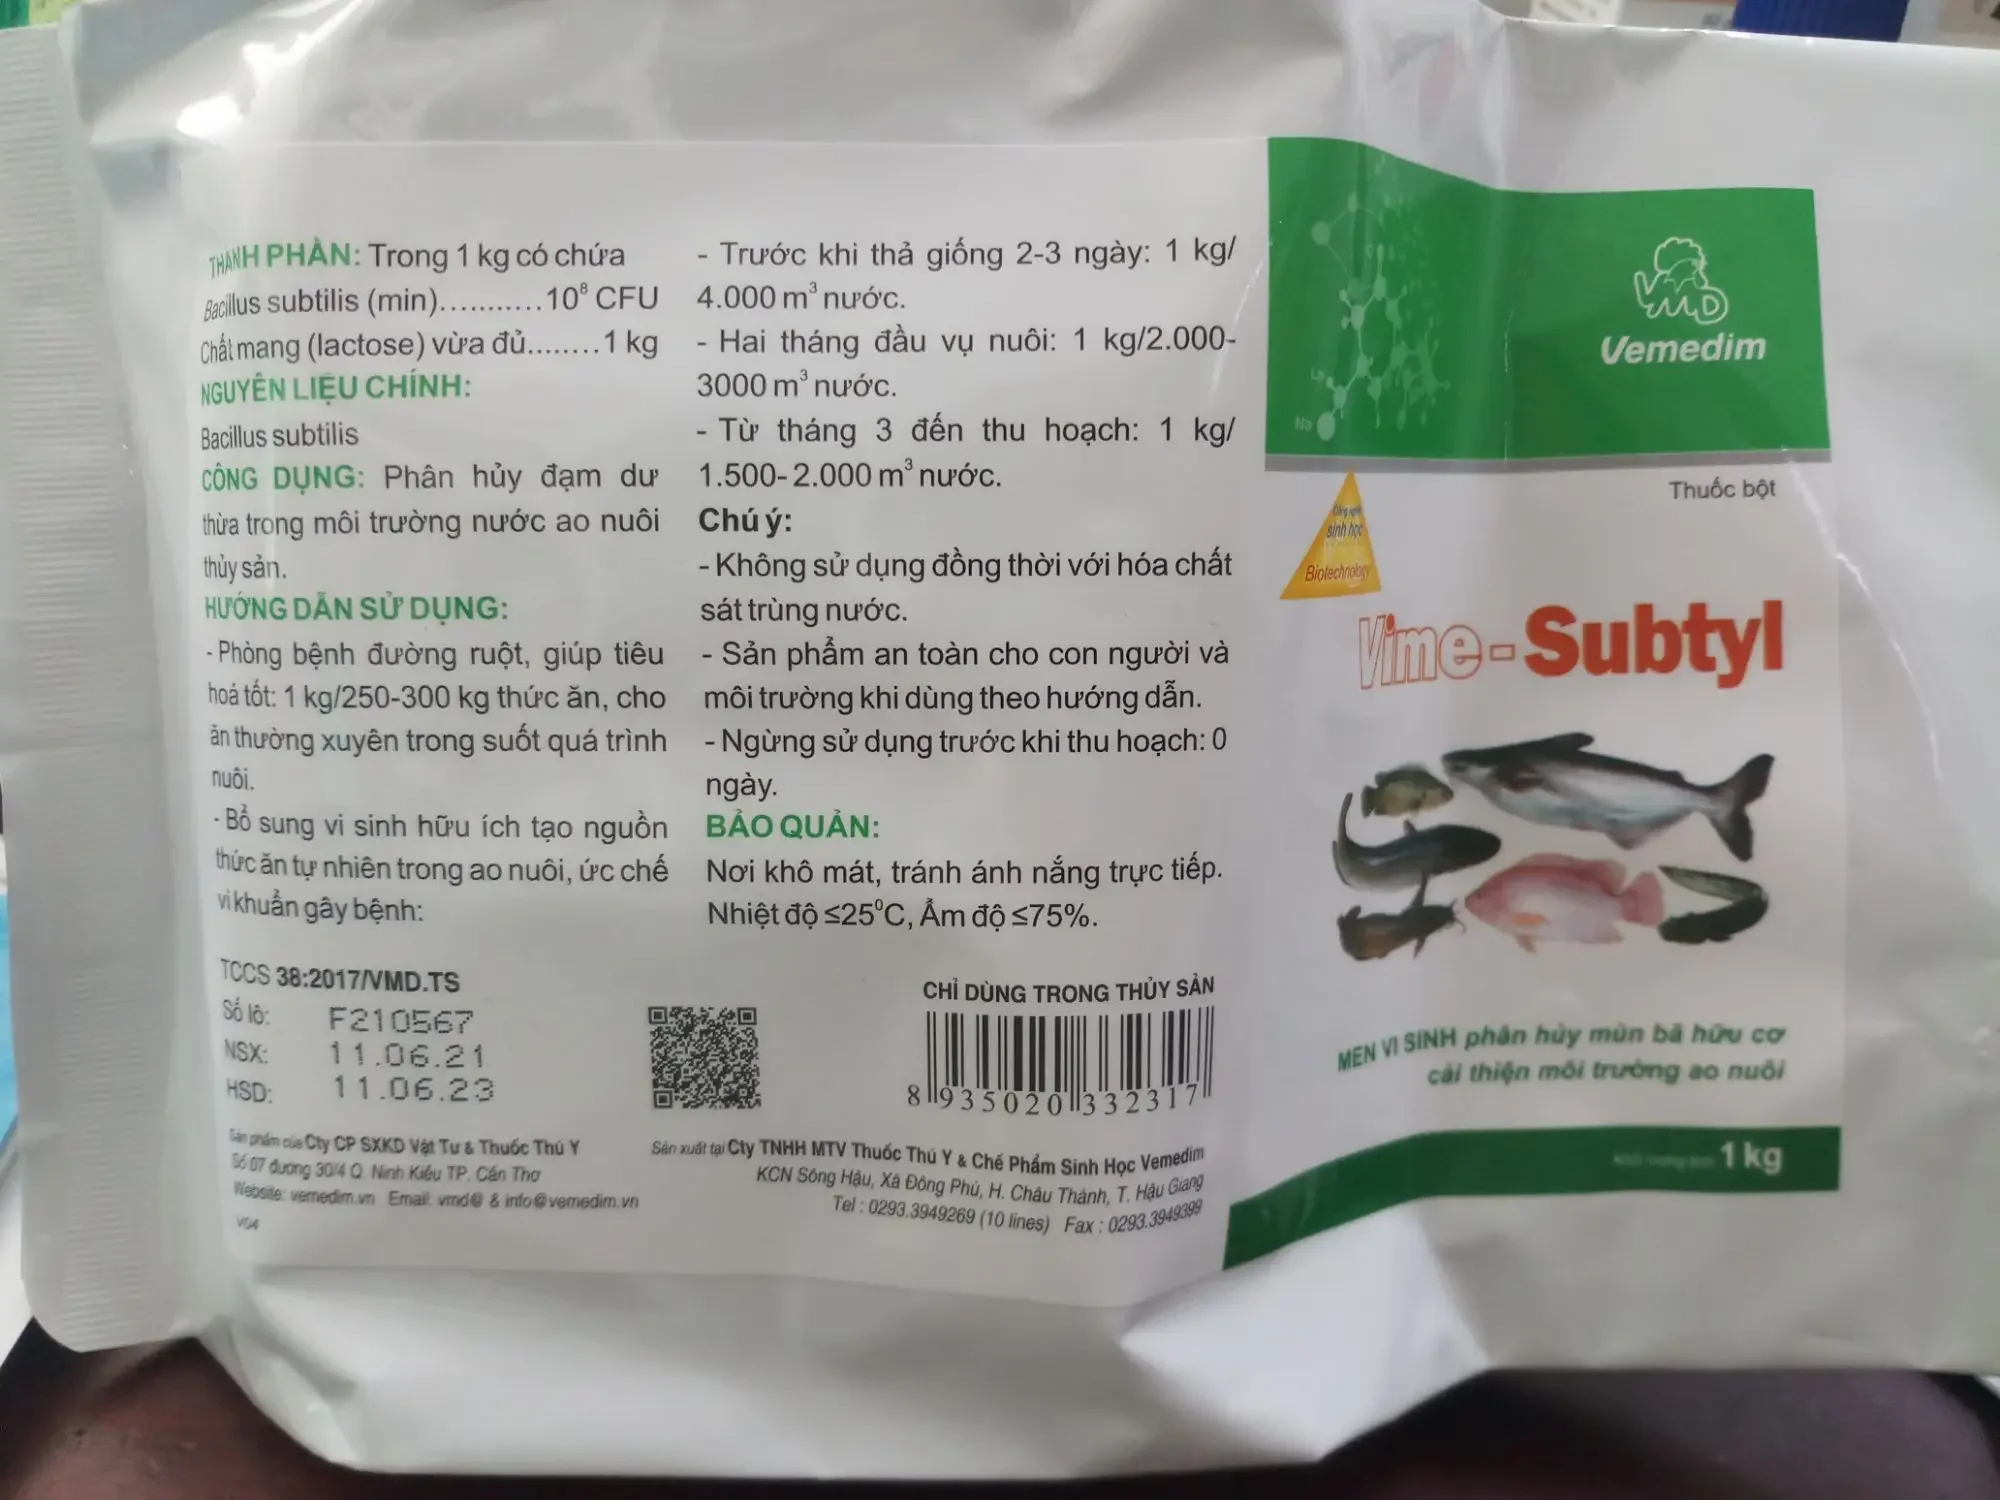 Vime subtyl ( nhãn cá) 1kg phân hủy mùn bã trong ao nuôi hsd 11/06/2023